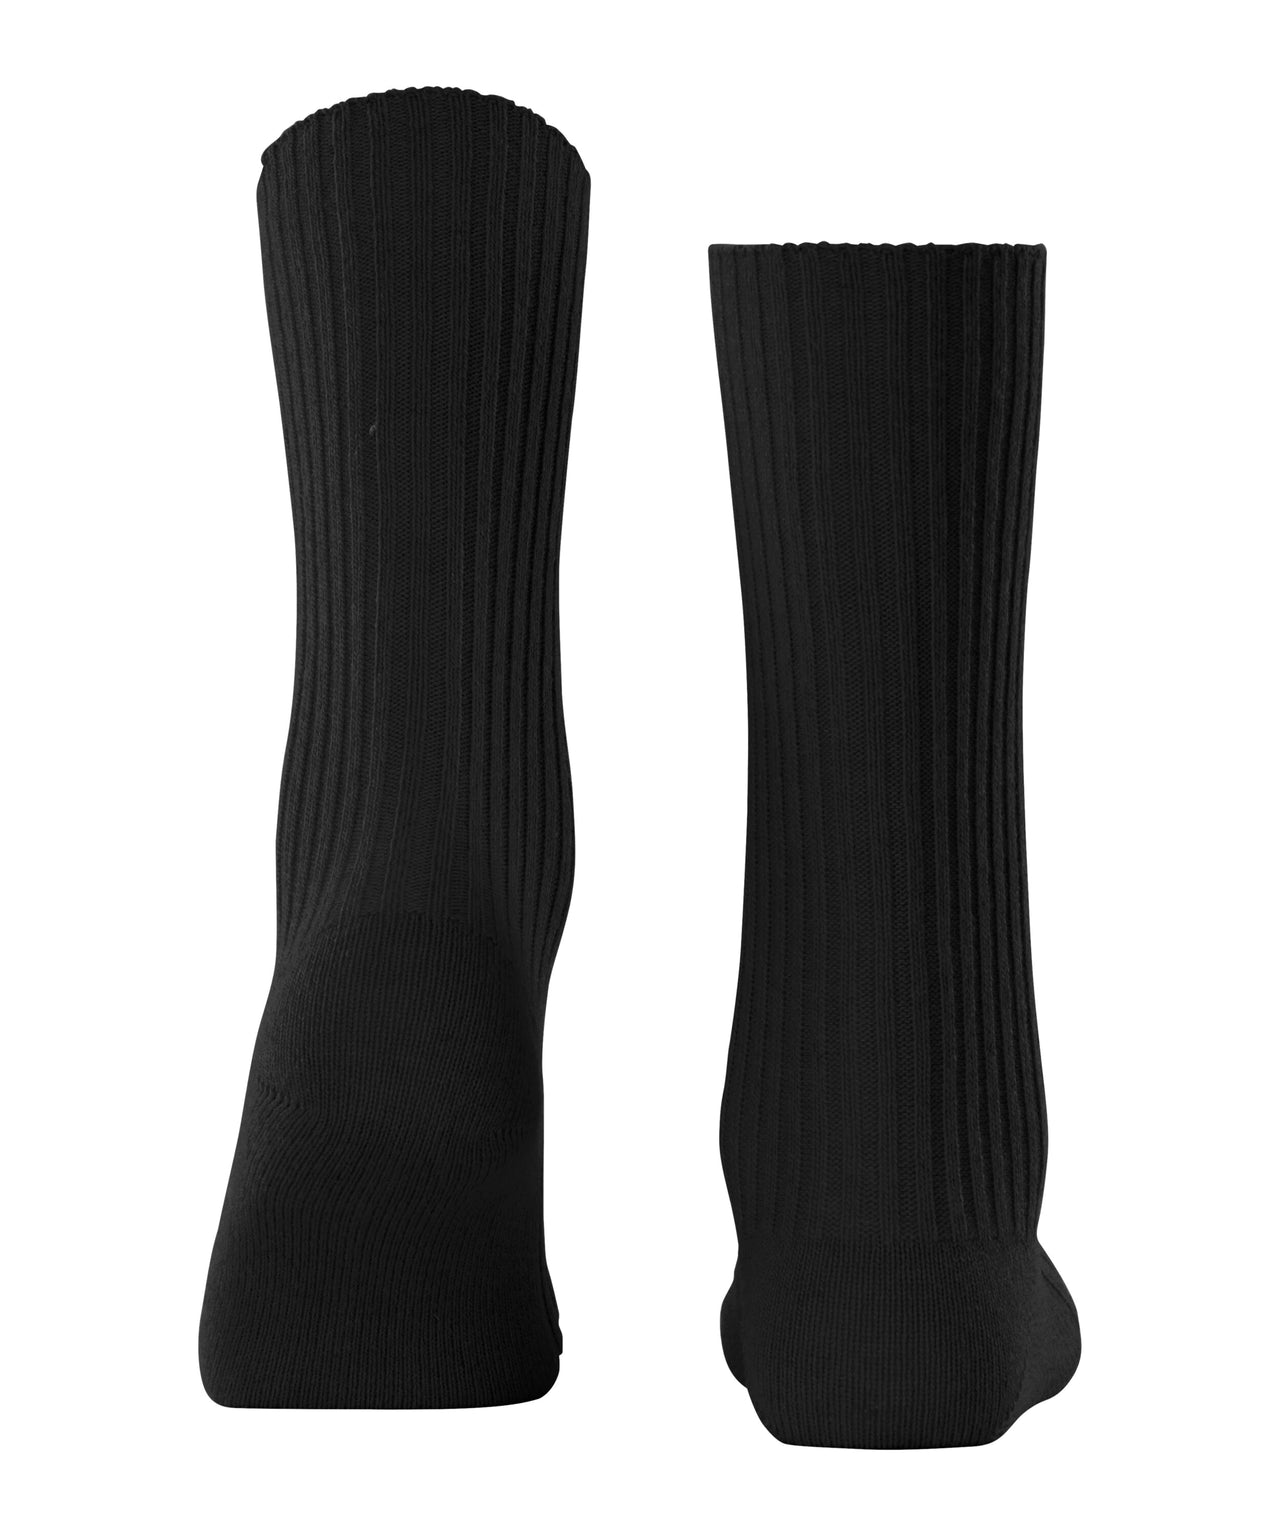 FALKE Cosy Wool Boot Women Socks - Black